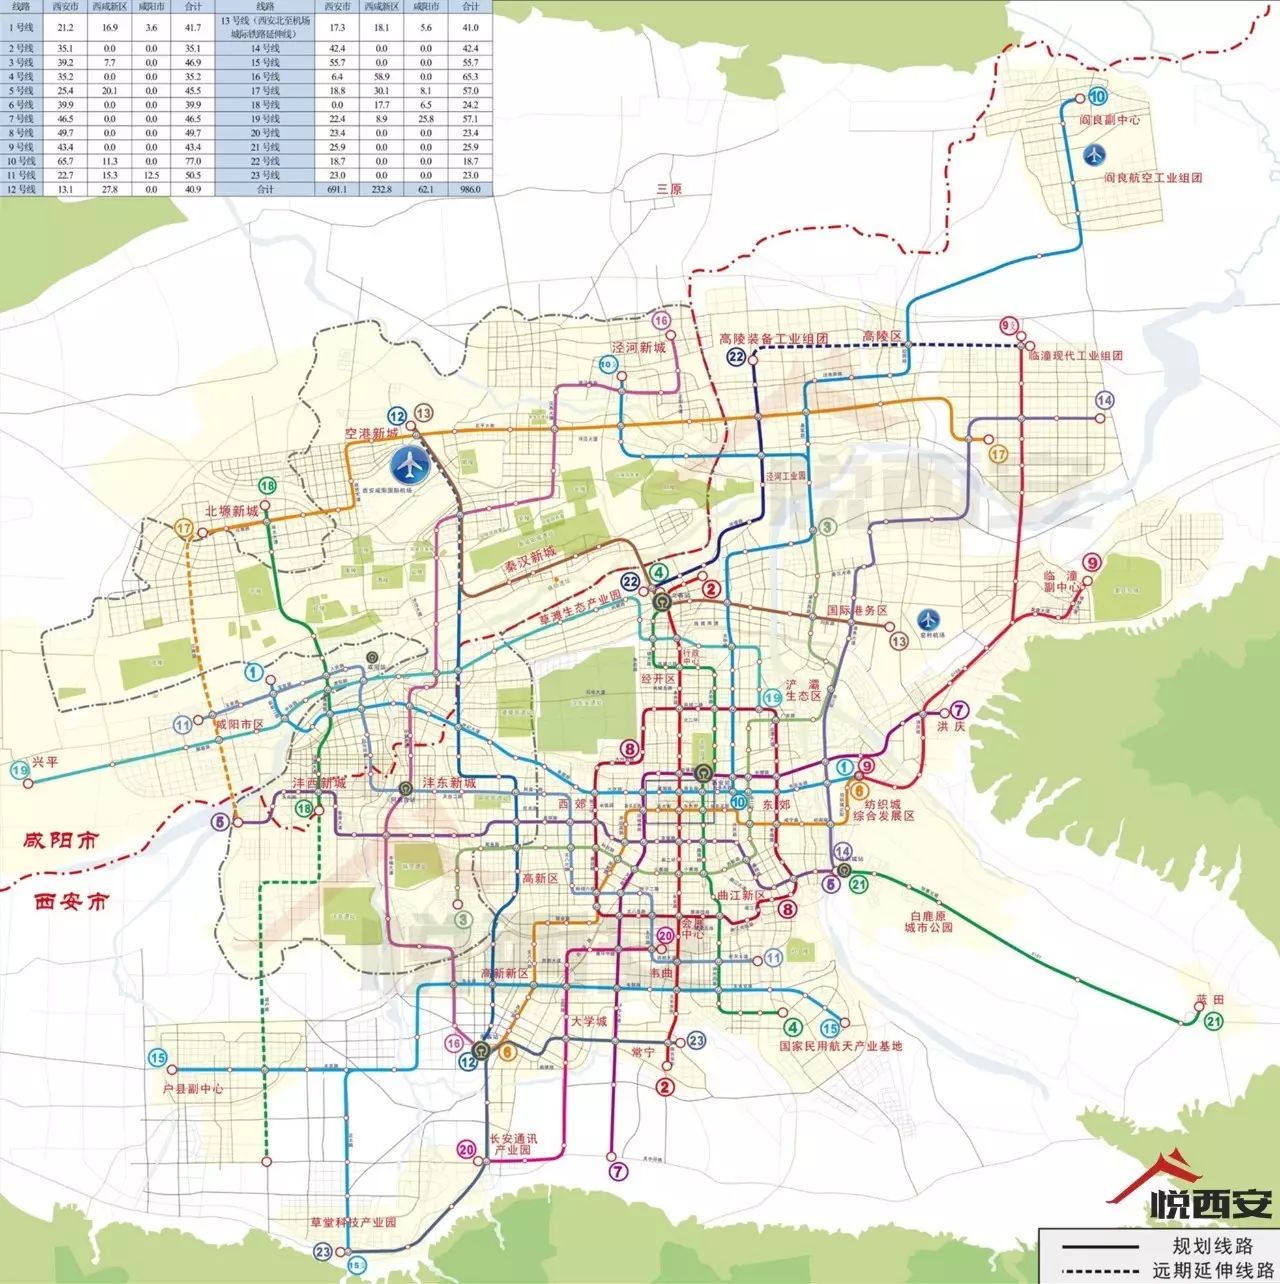 (点击查看大图) 与此同时,《西安市城市轨道交通建设规划(2017～2023